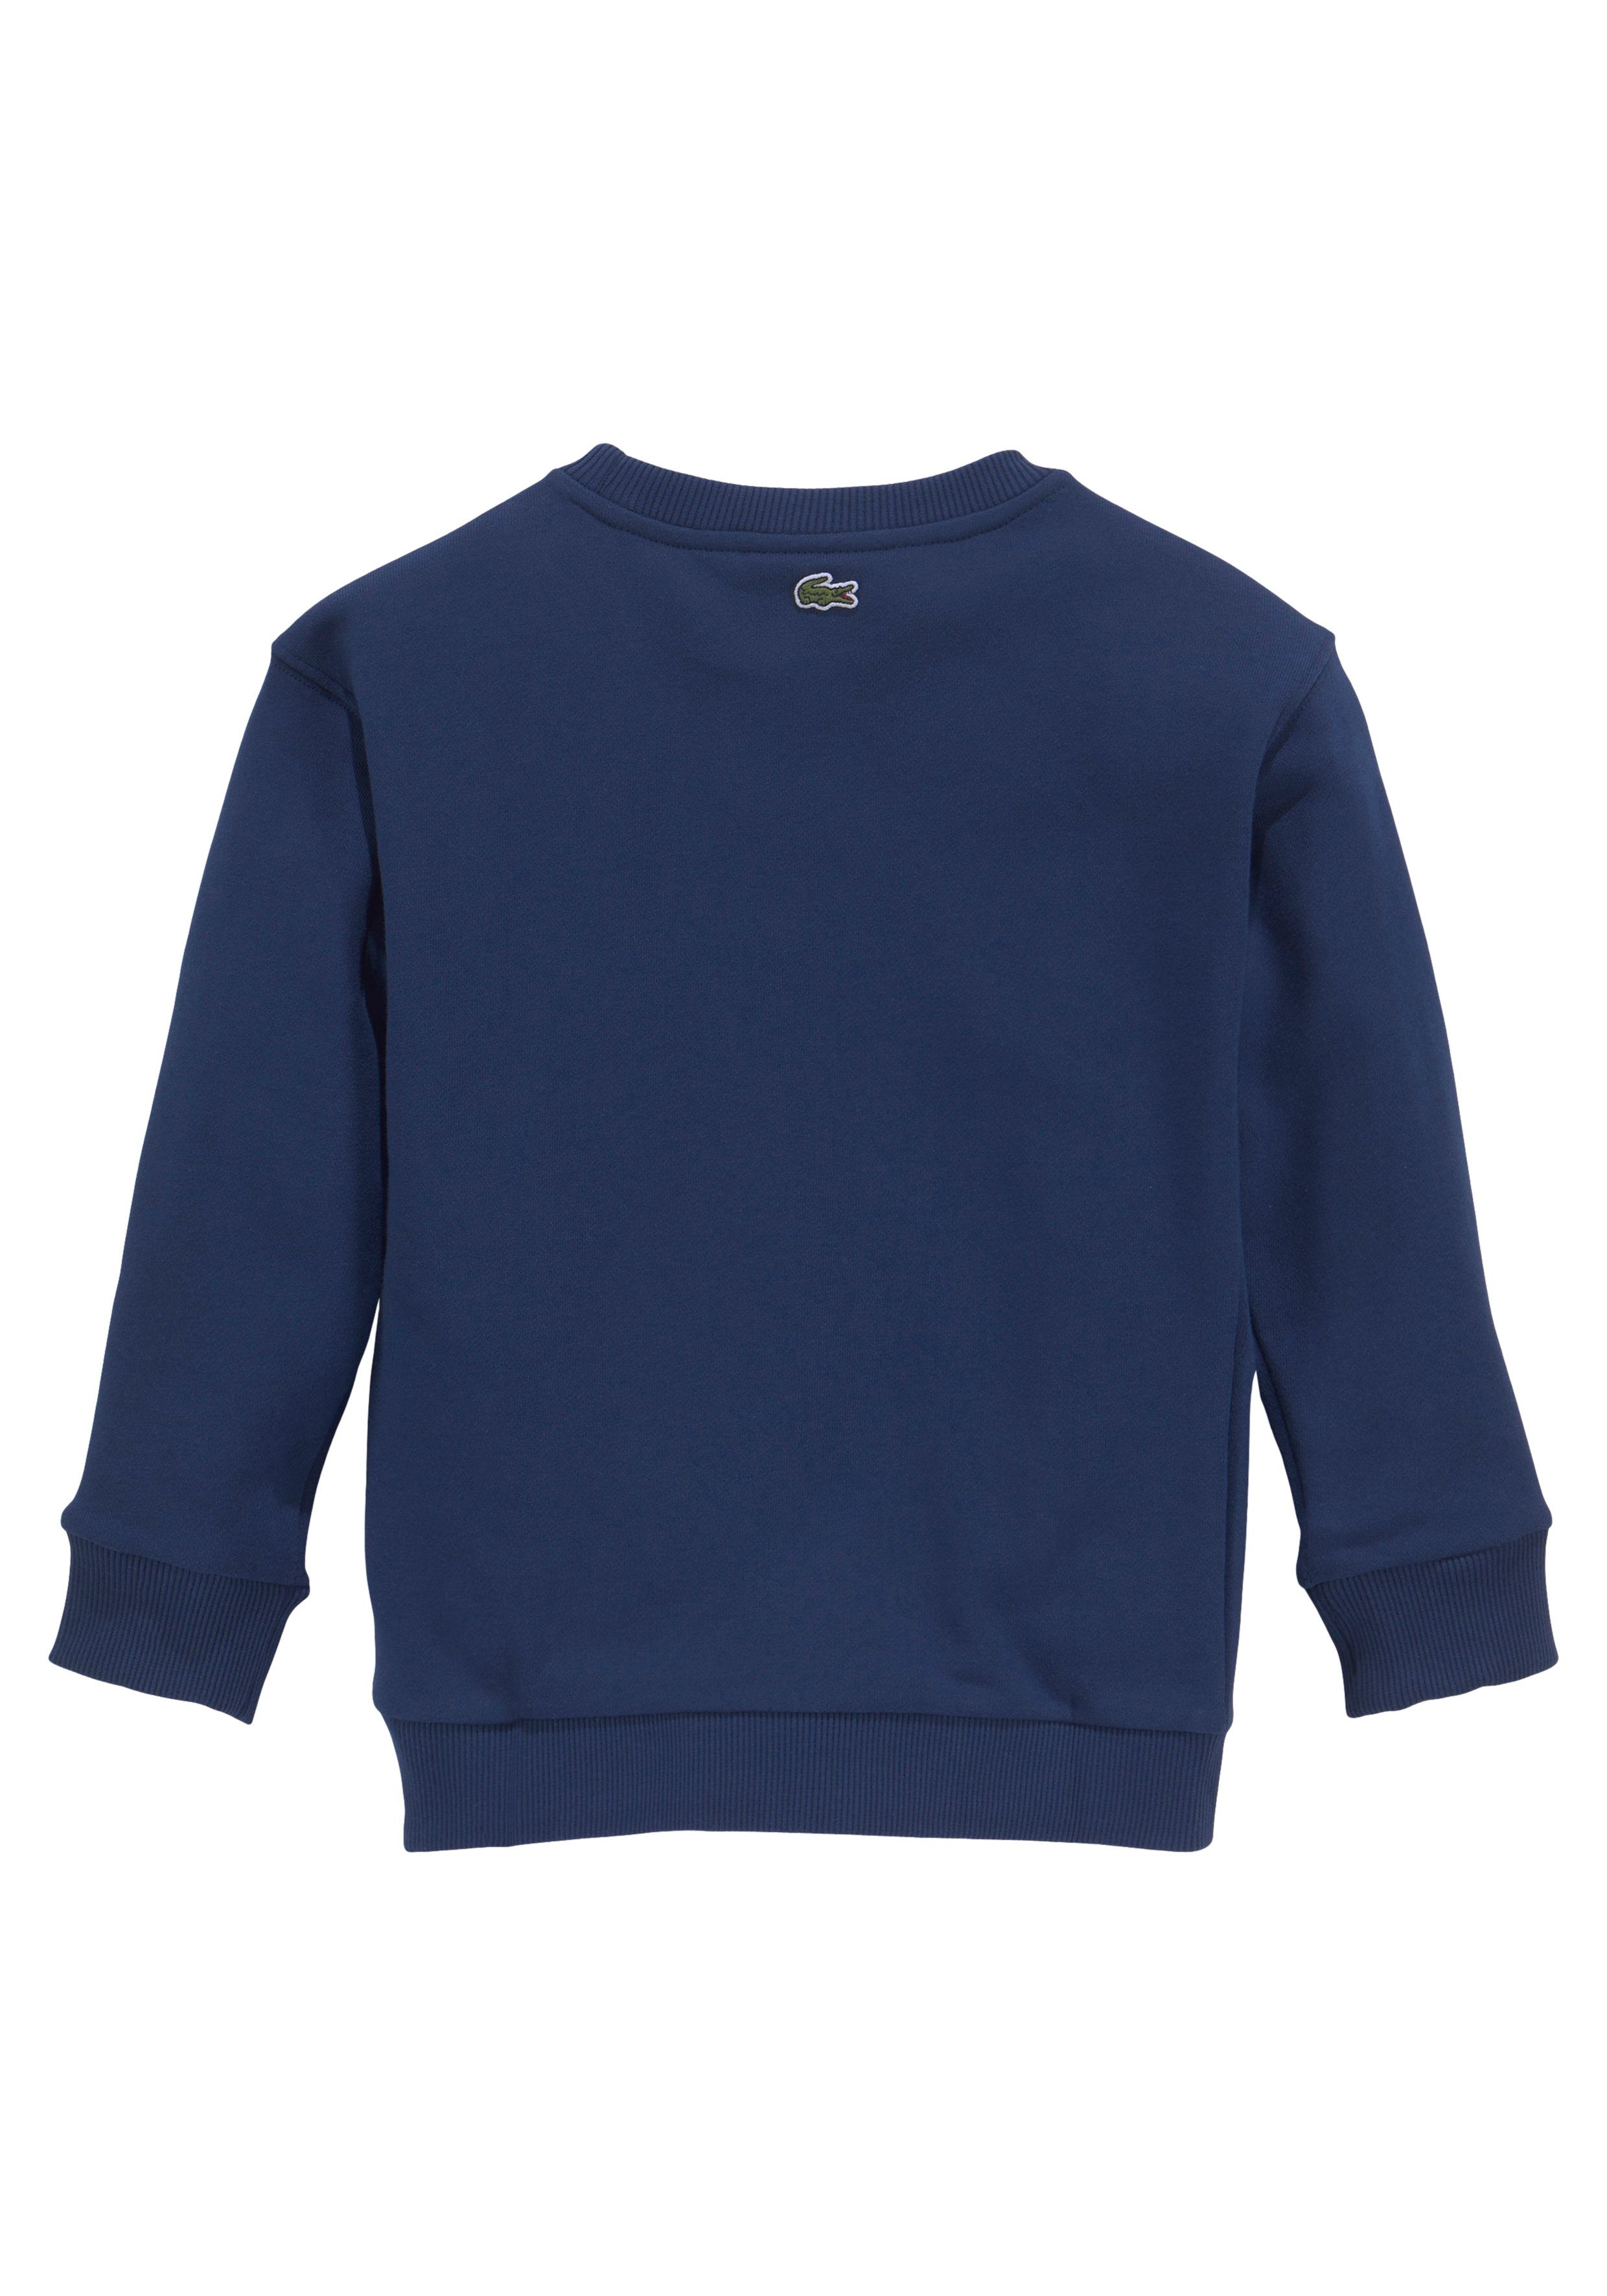 Lacoste Sweatshirt Kinder Kids Brust blau der MiniMe,mit auf Junior modernem Labeldruck